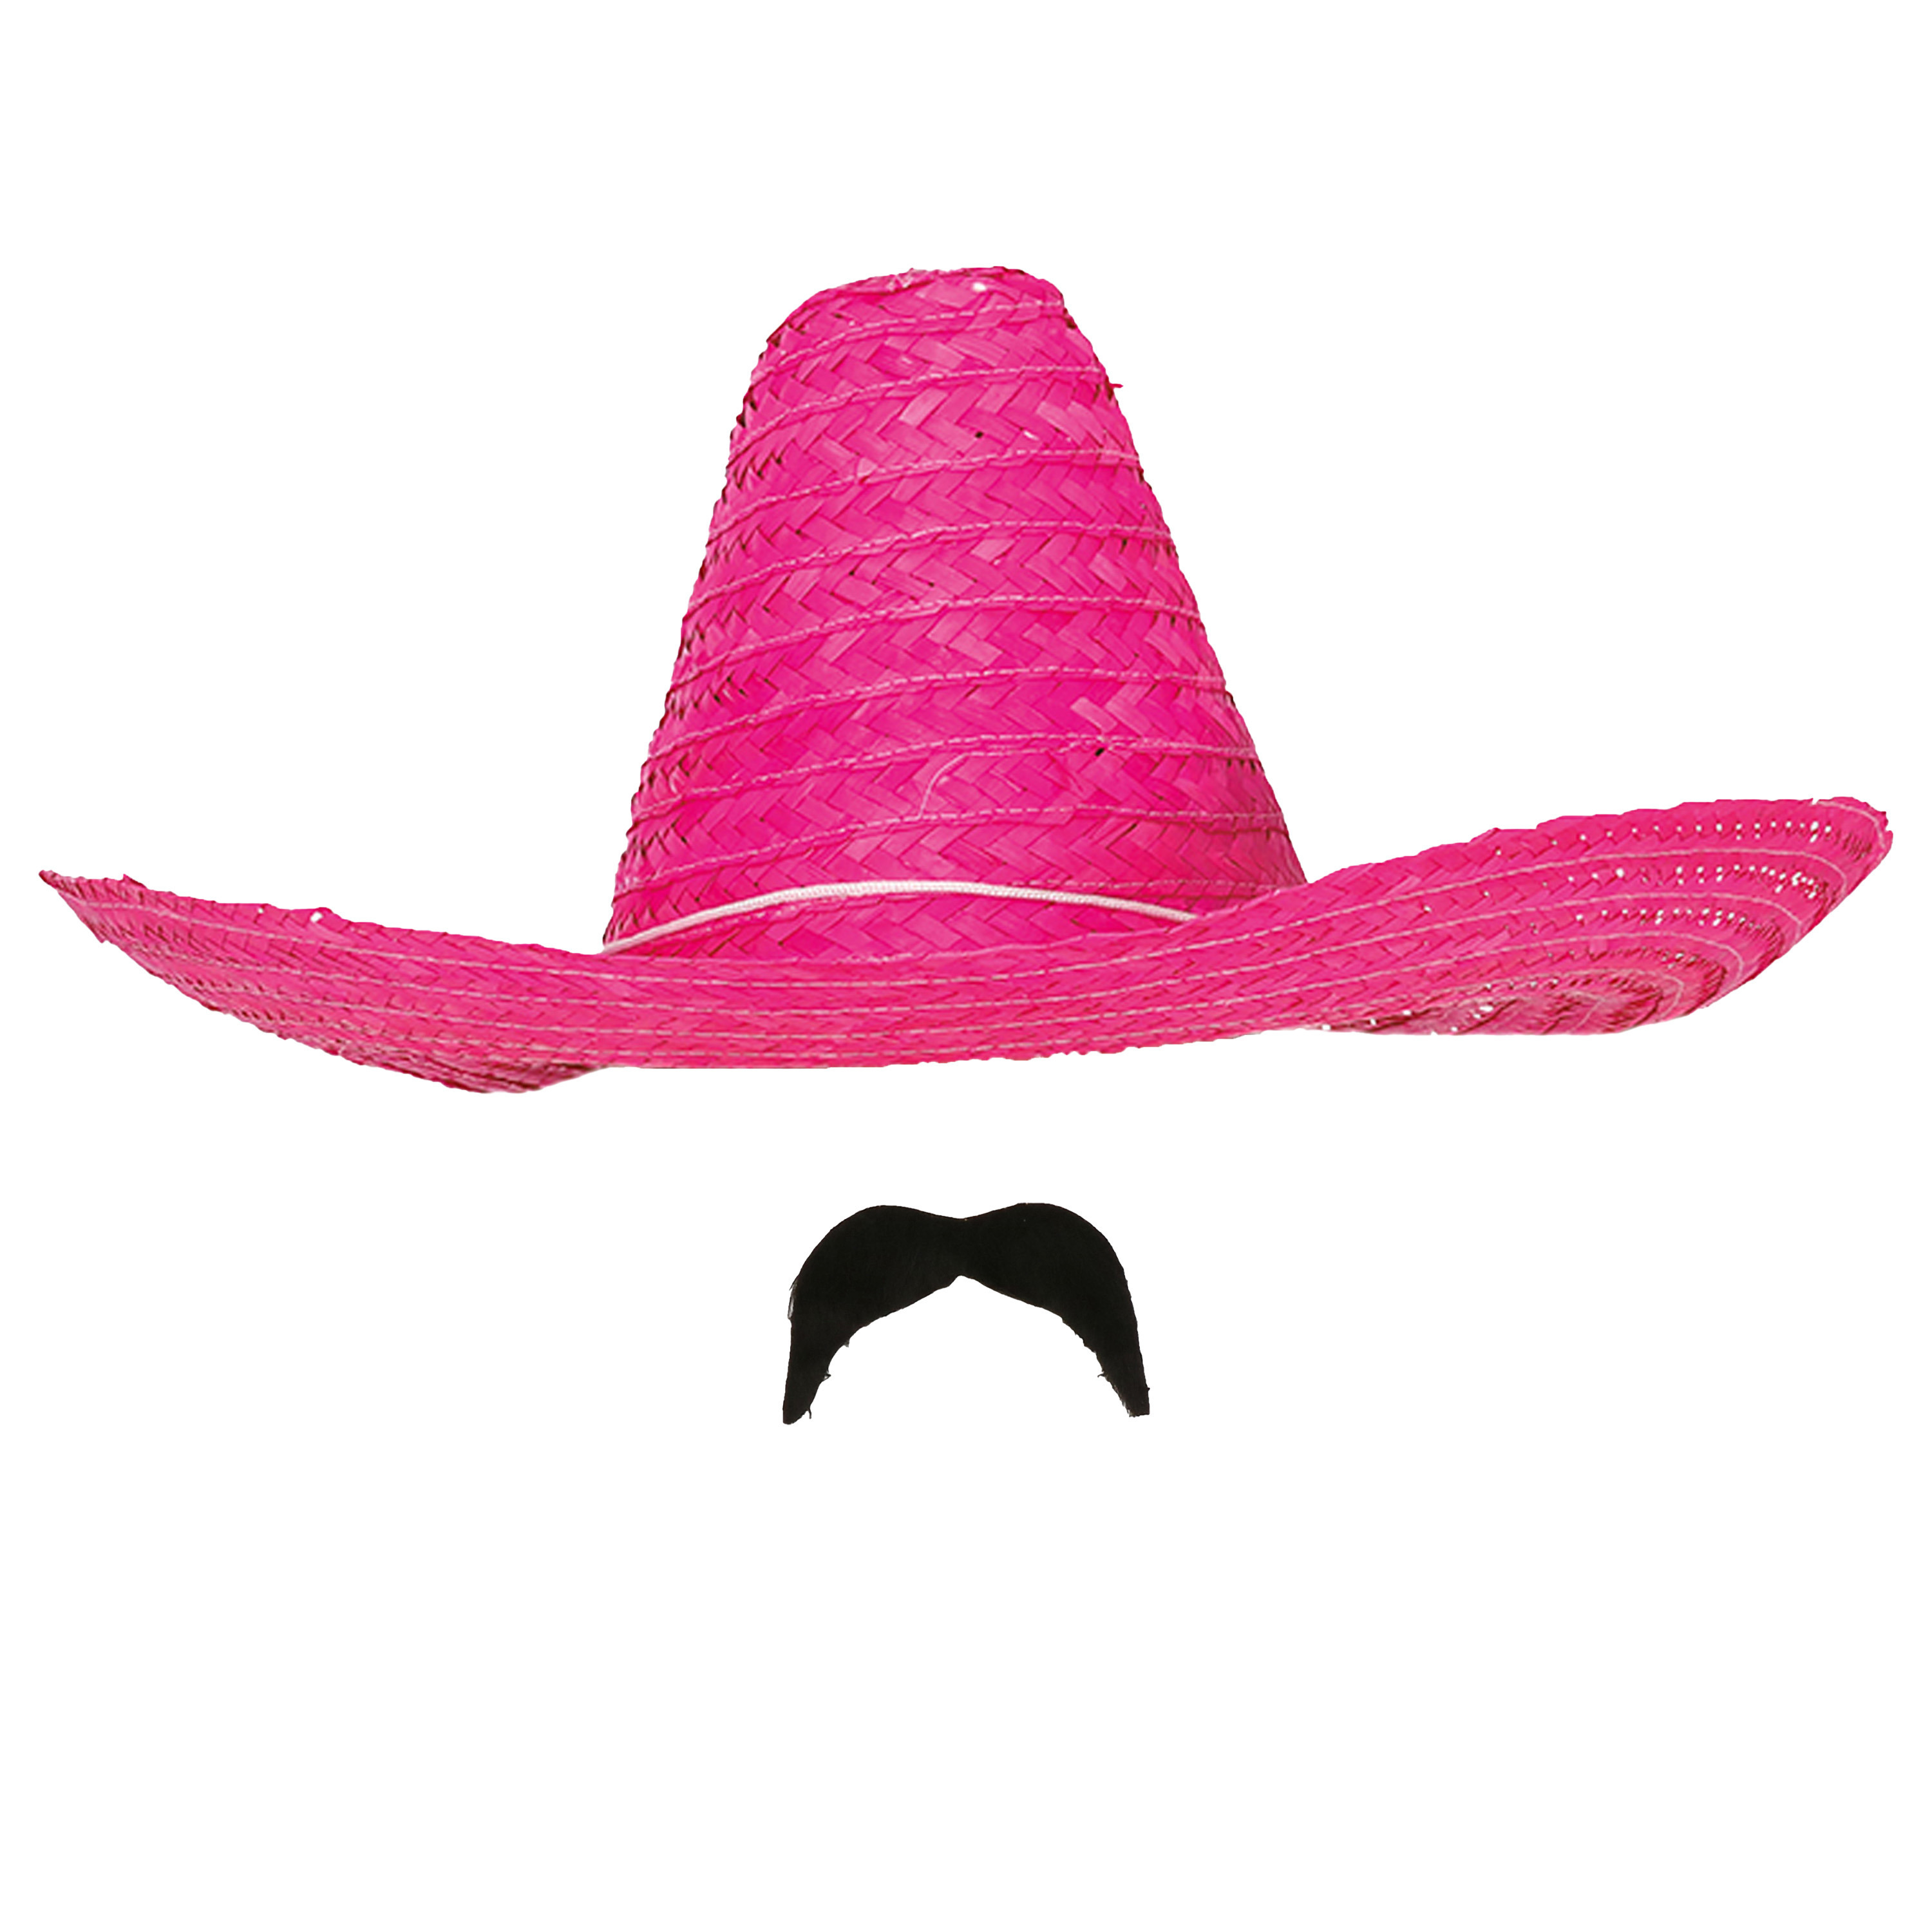 Carnaval verkleed setje Mexicaanse sombrero hoed met plak nepsnor roze heren